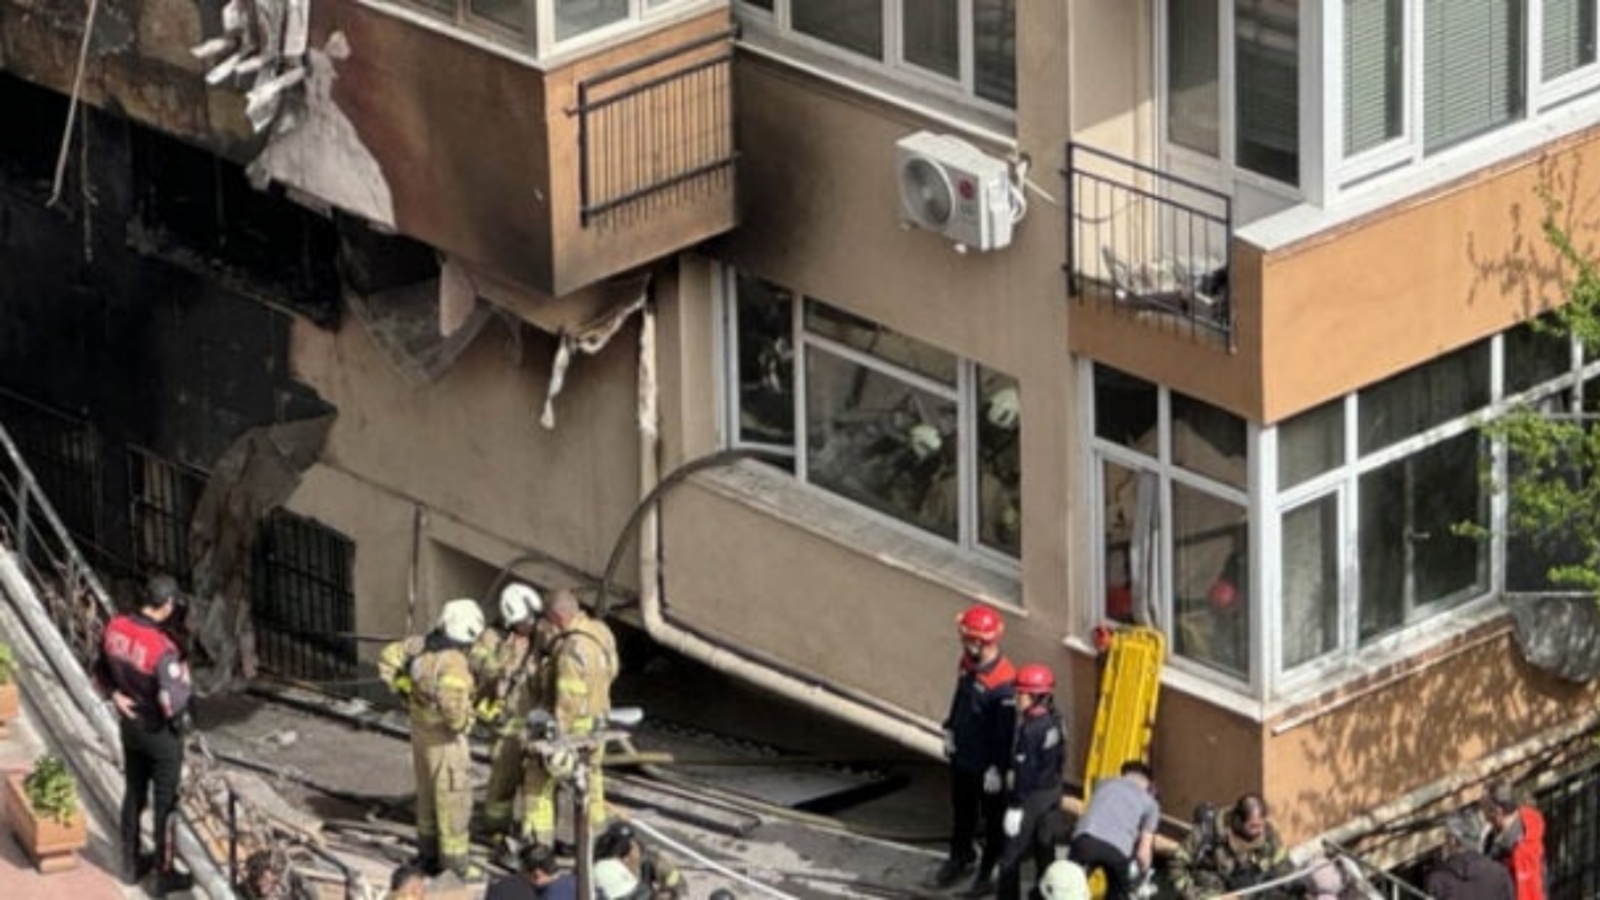  حريق اندلع في الطابق السفلي من مبنى سكني مؤلف من 16 طابقا في إسطنبول